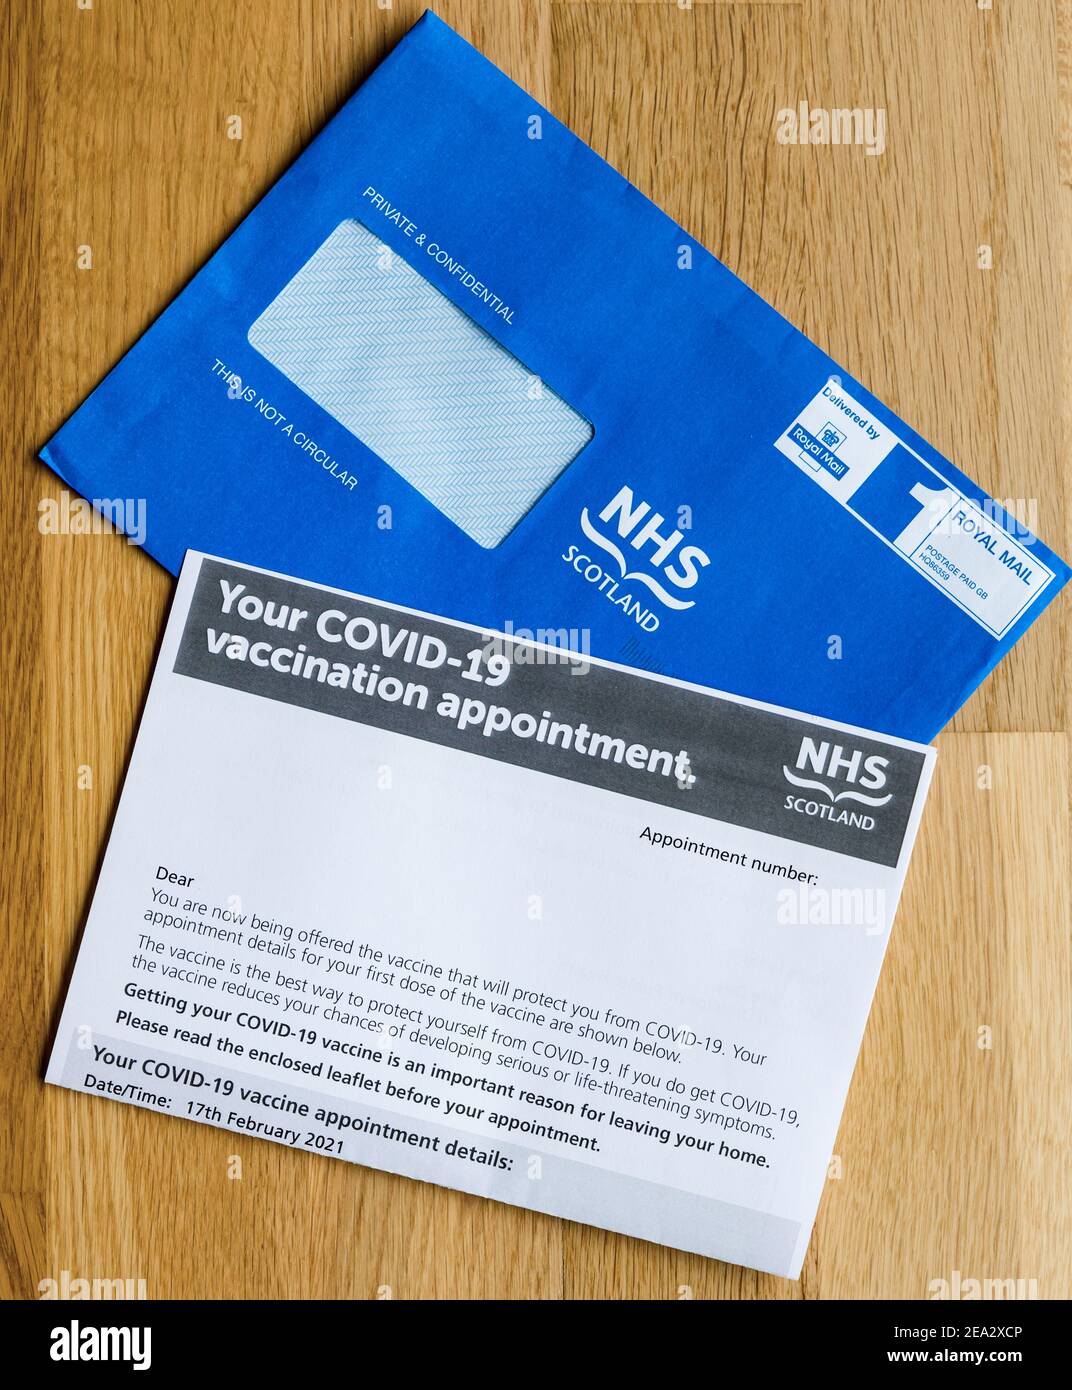 Carta de cita de la vacuna y sobre azul de NHS Scotland durante la pandemia del coronavirus Covid-19, Reino Unido Foto de stock